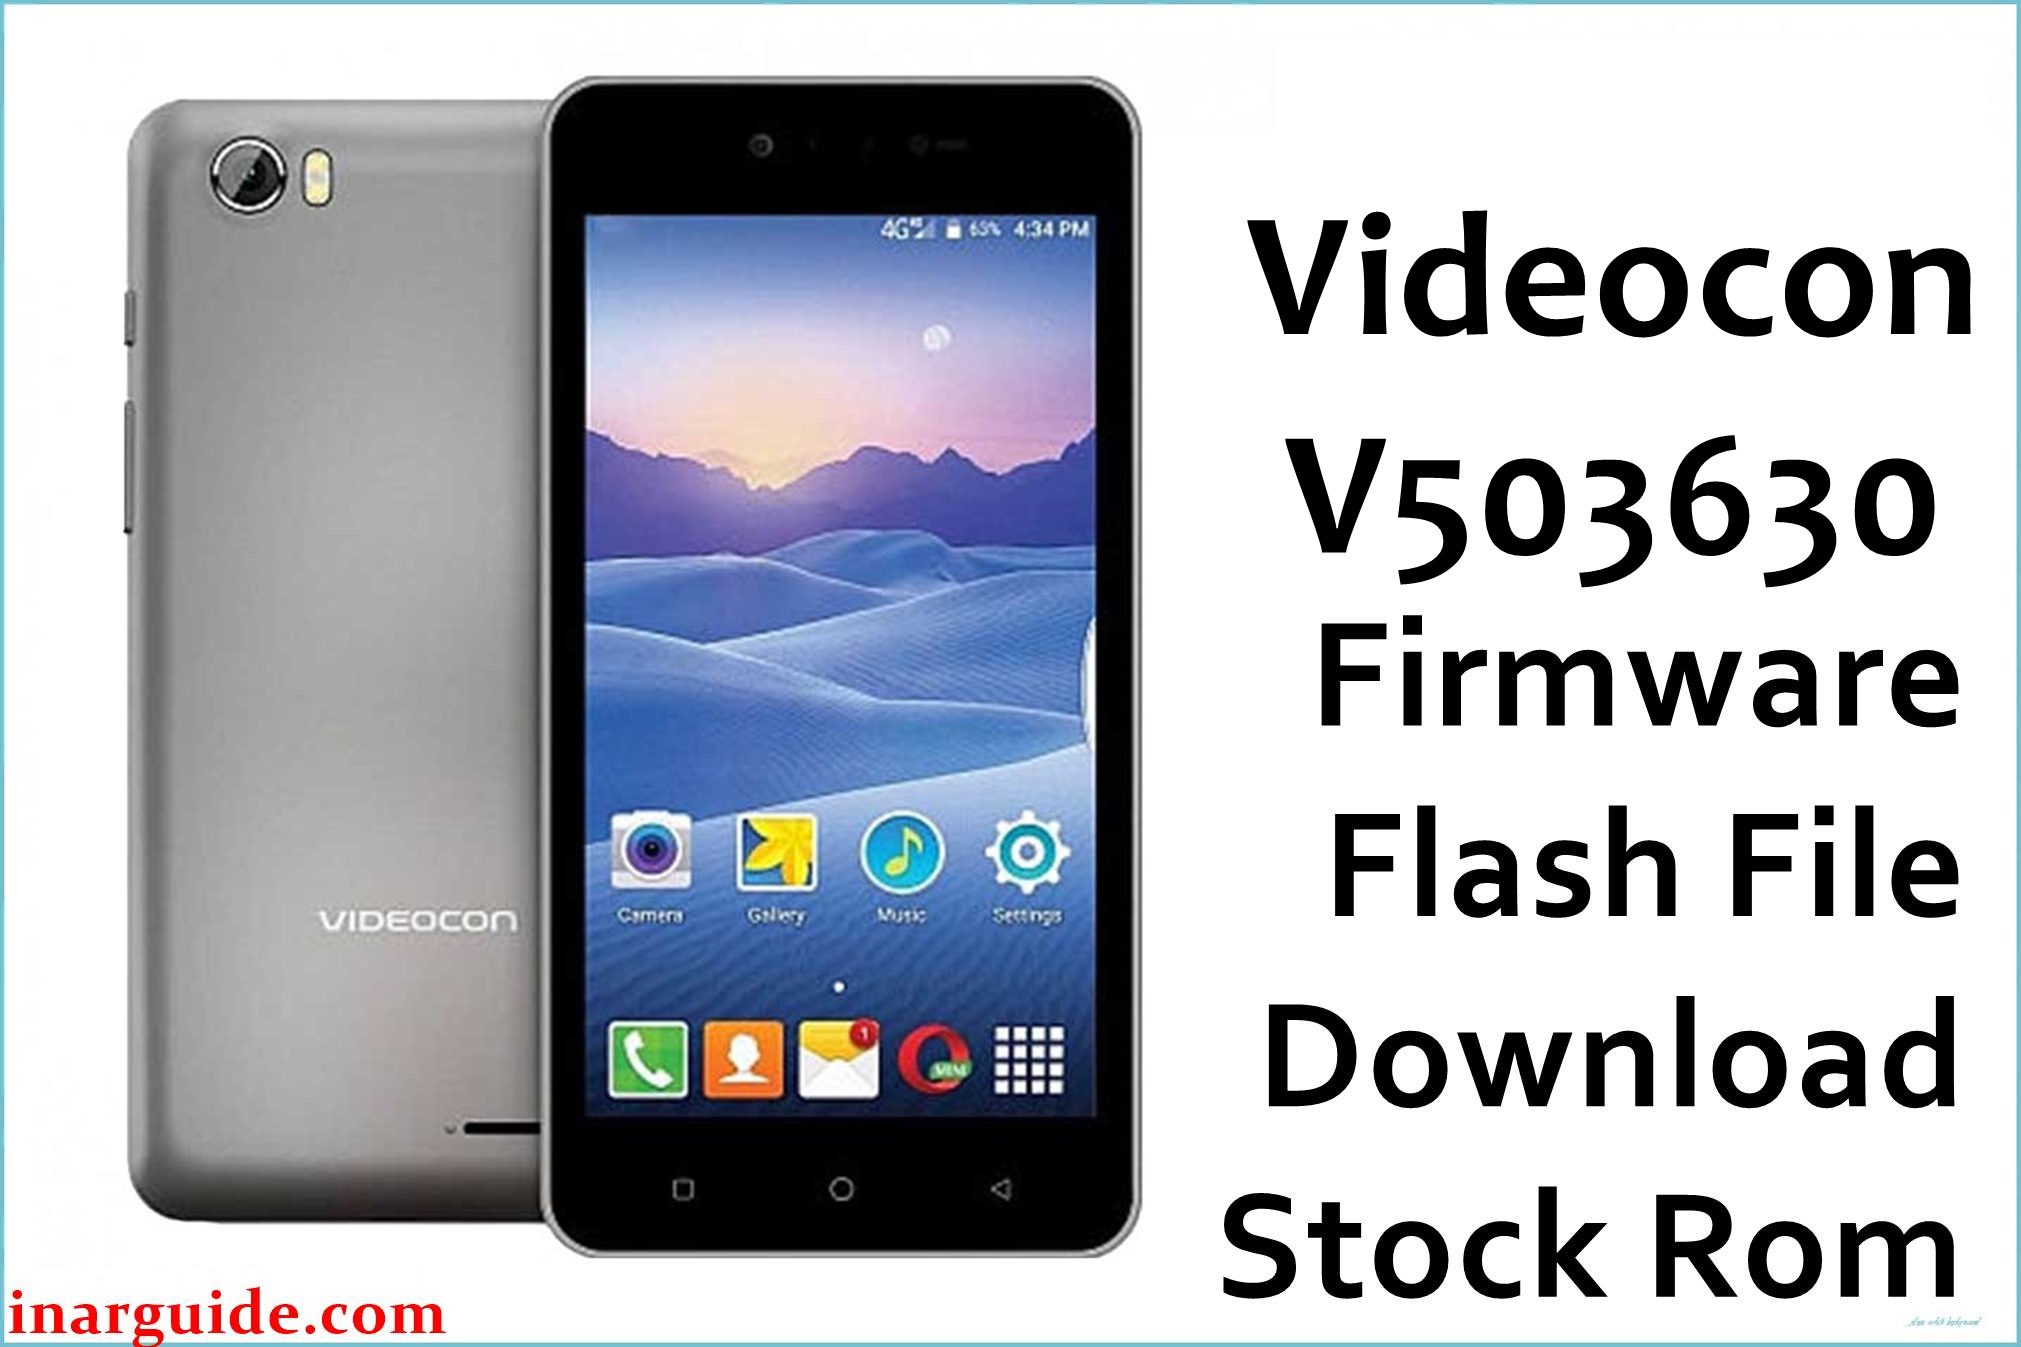 Videocon V503630